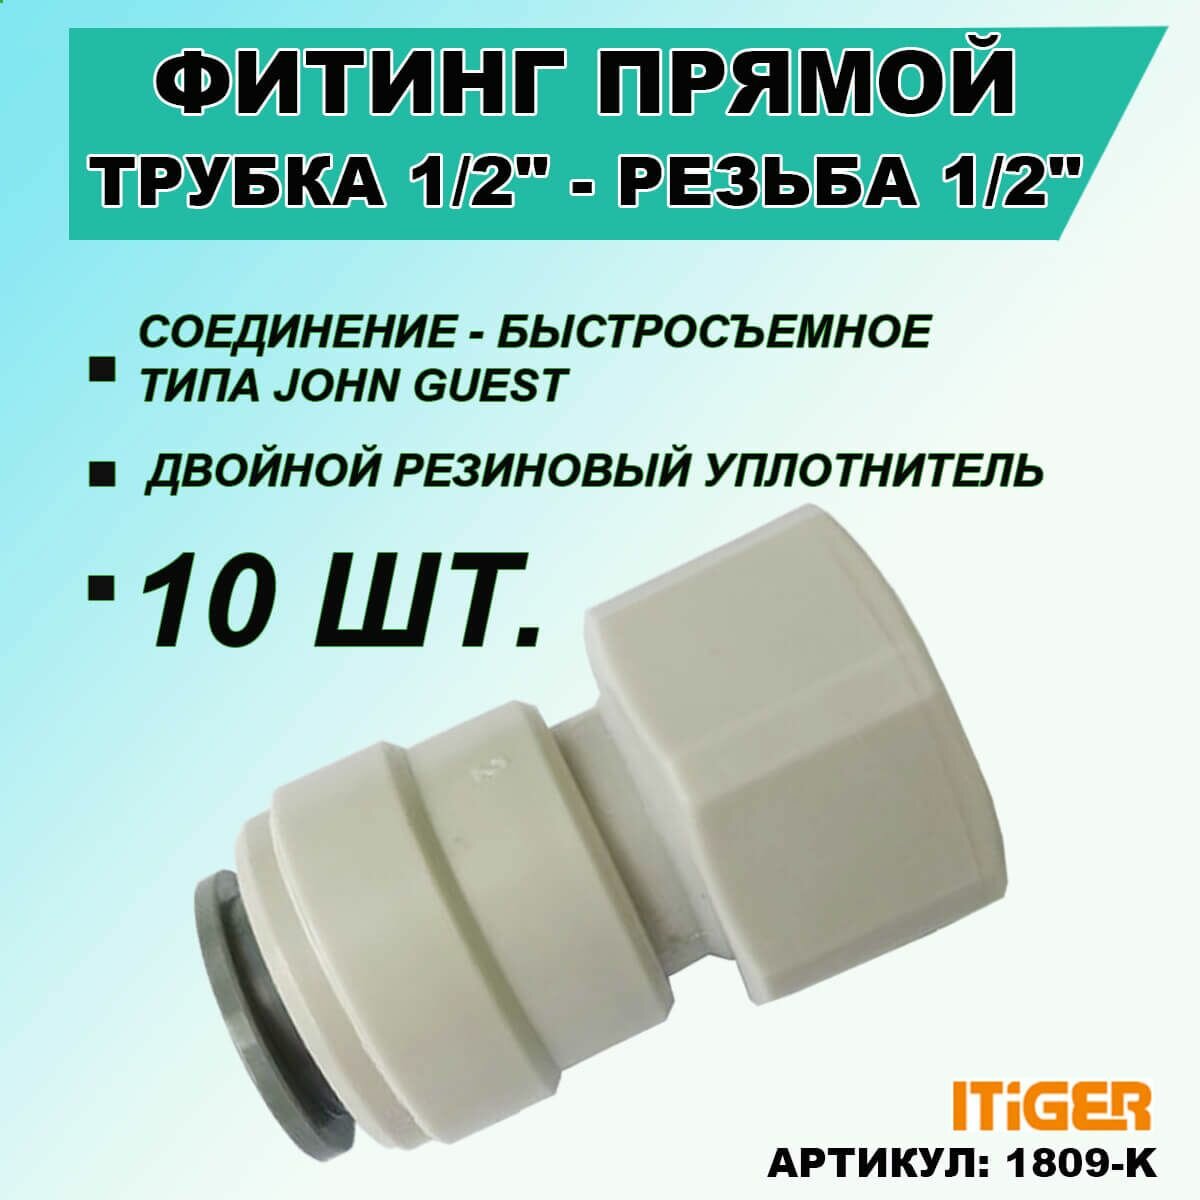 10 шт. Фитинг прямой iTiGer типа John Guest (JG) для фильтра воды, трубка 1/2" - внутренняя резьба 1/2"